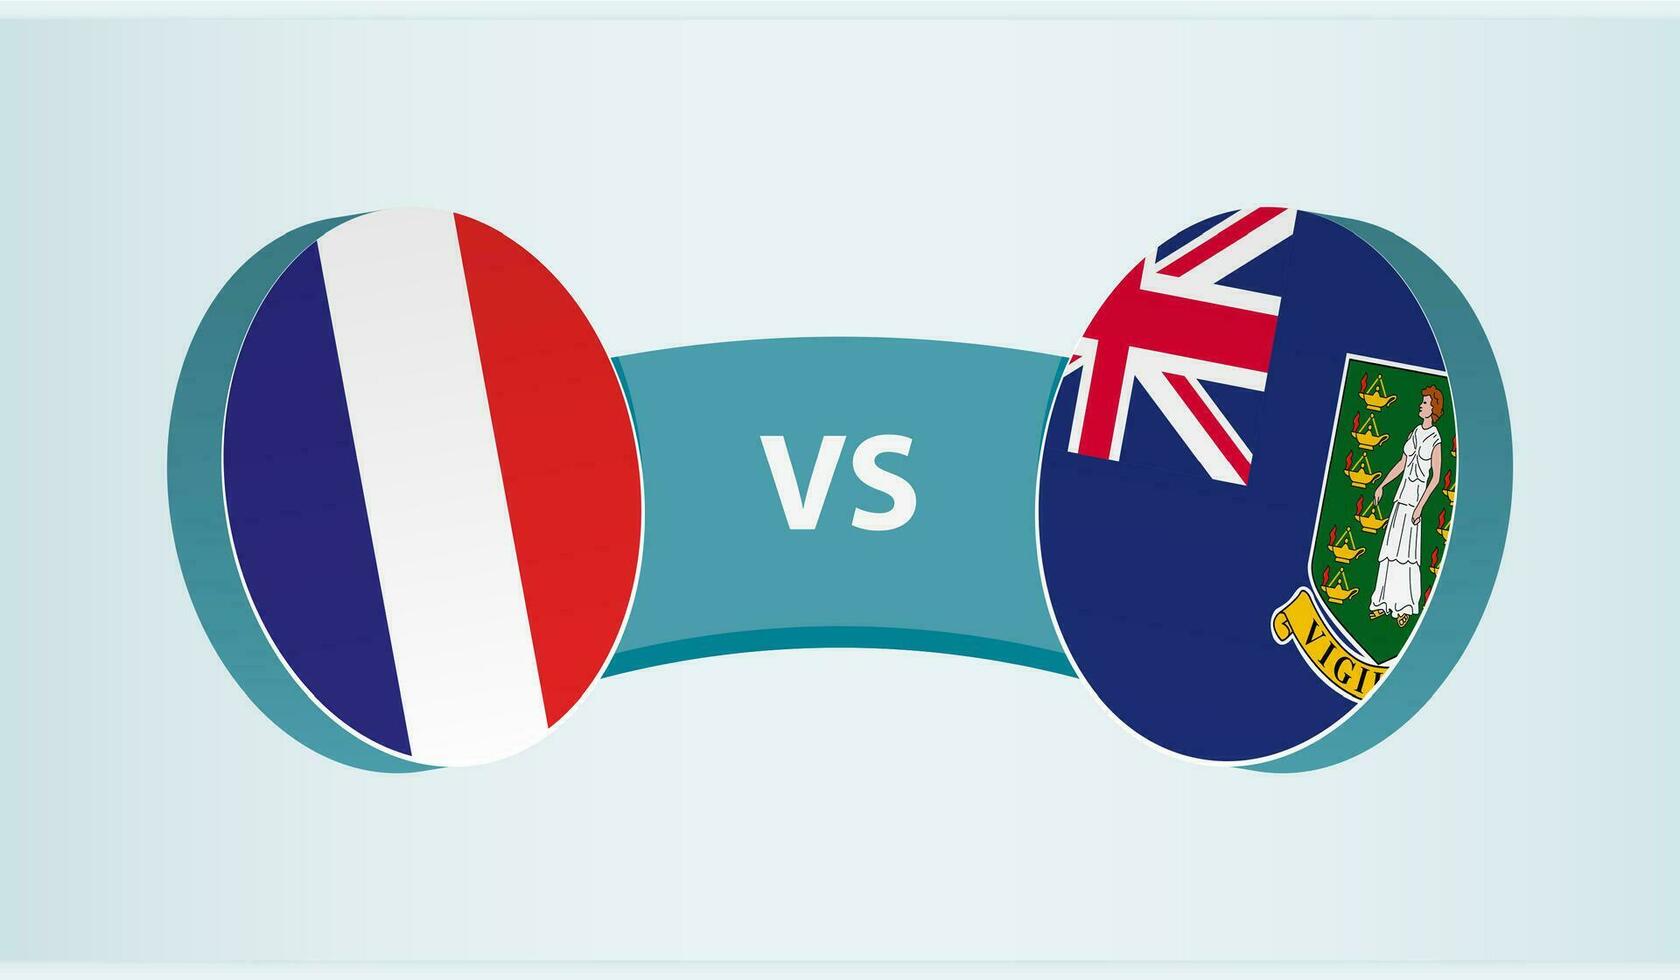 Francia versus británico Virgen islas, equipo Deportes competencia concepto. vector